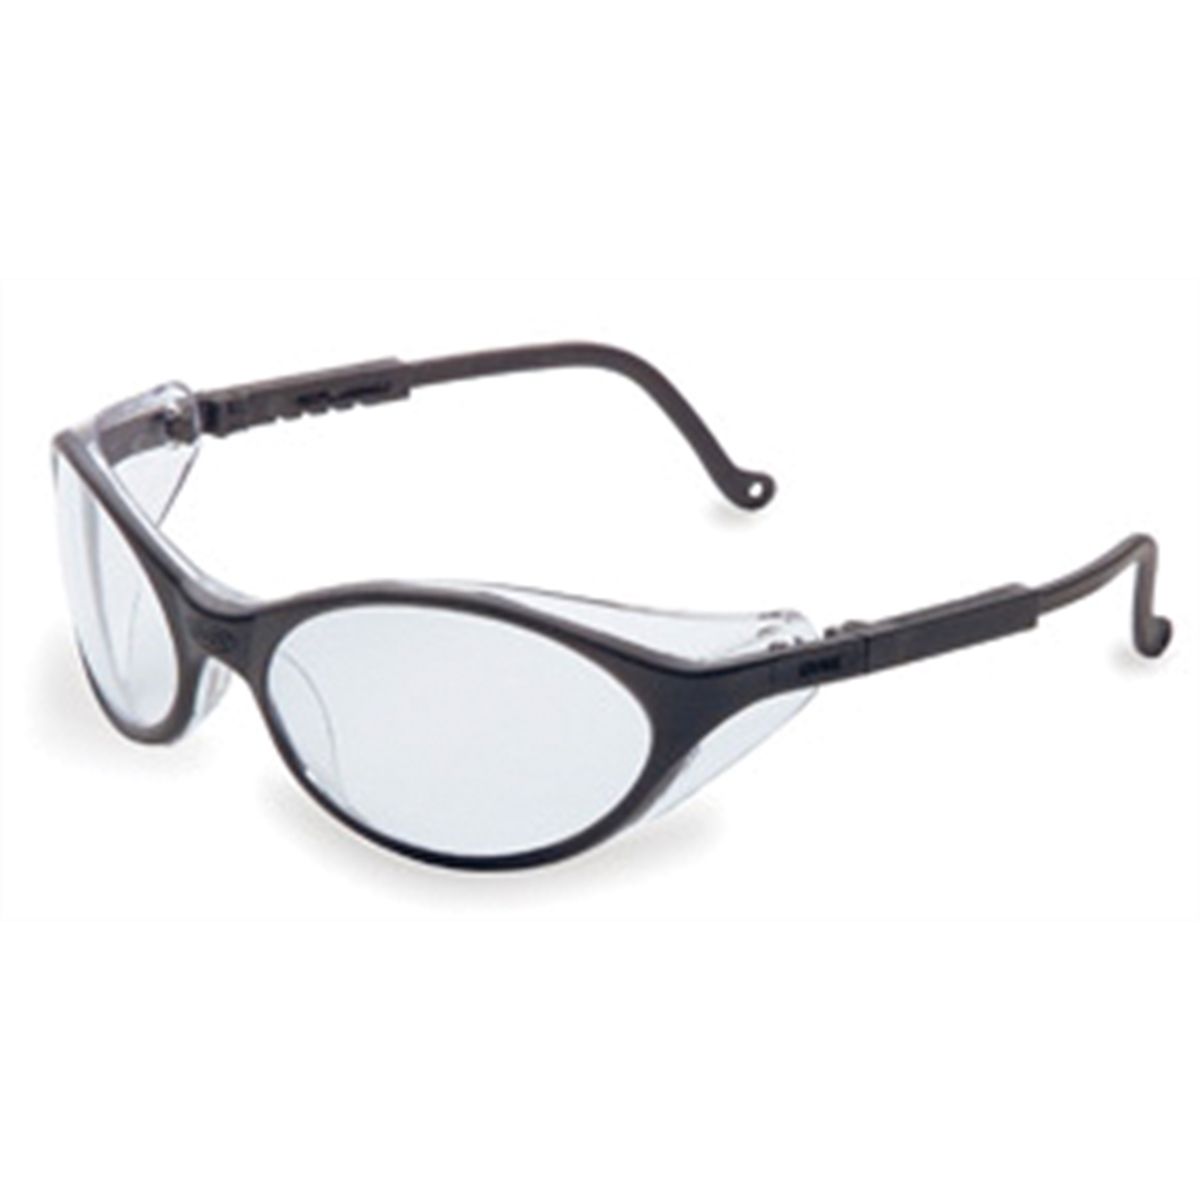 Safety Glasses - Bandit - Black/Clear Lens